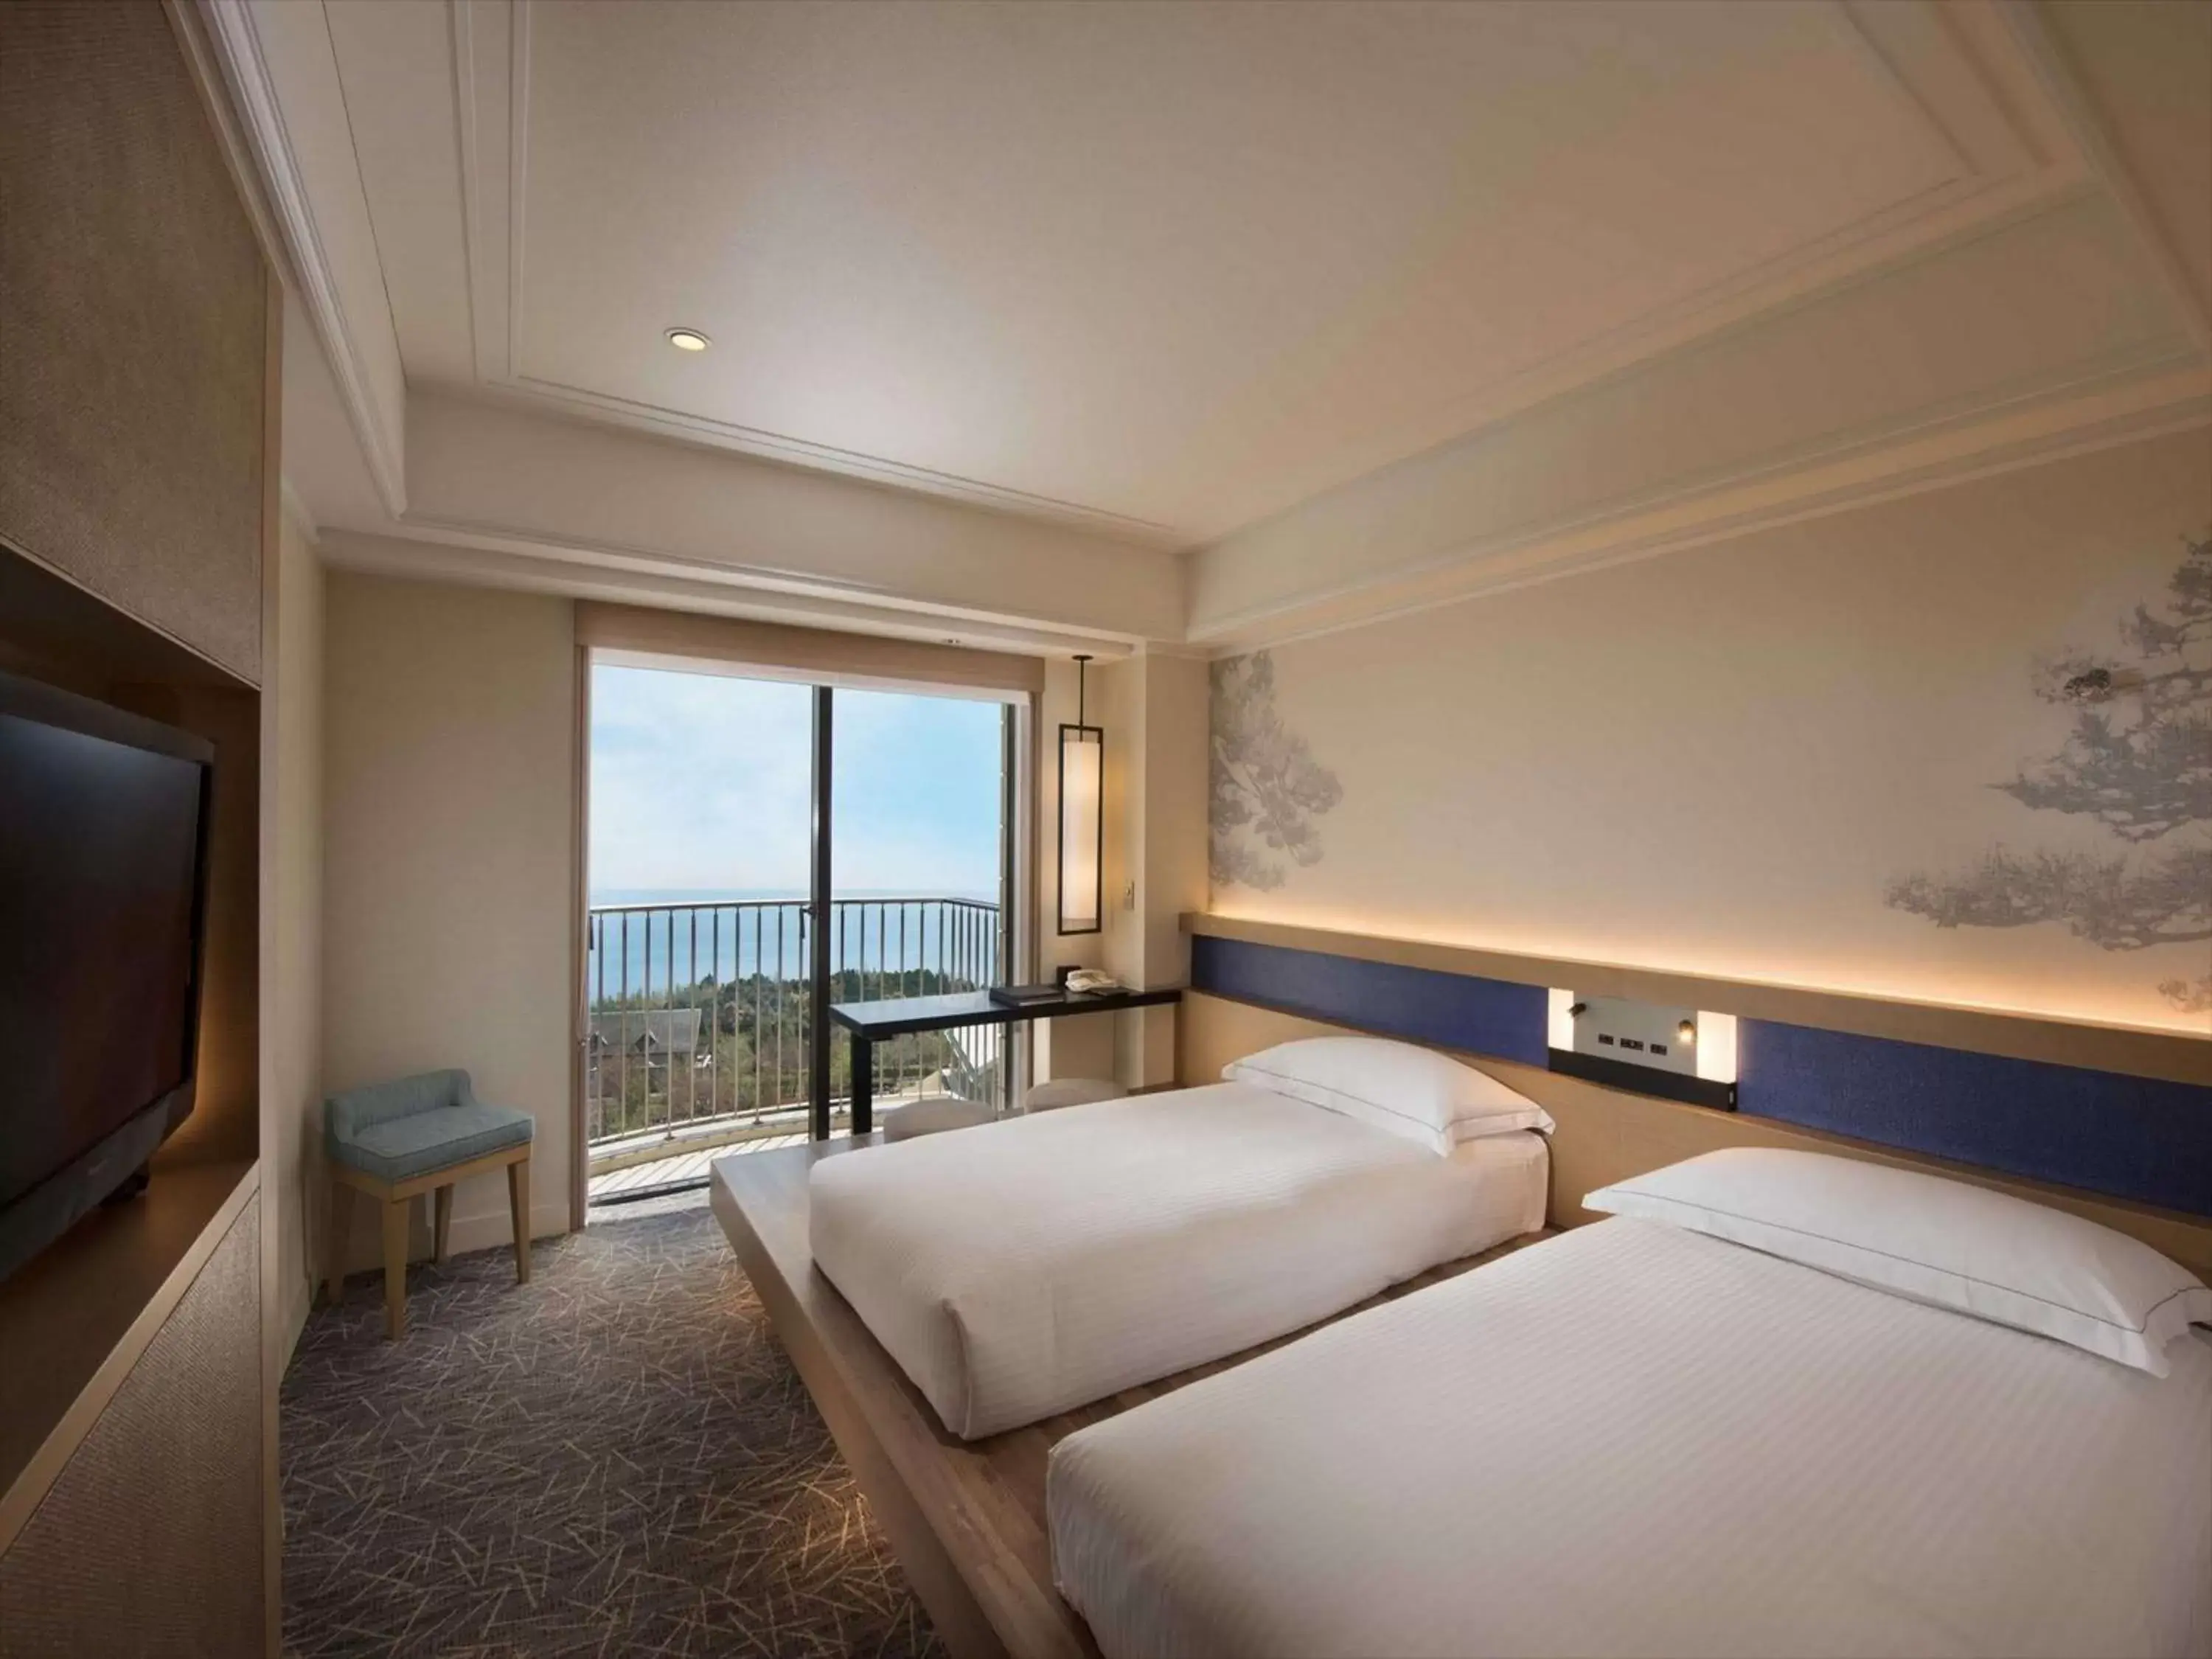 Bedroom in Hilton Odawara Resort & Spa